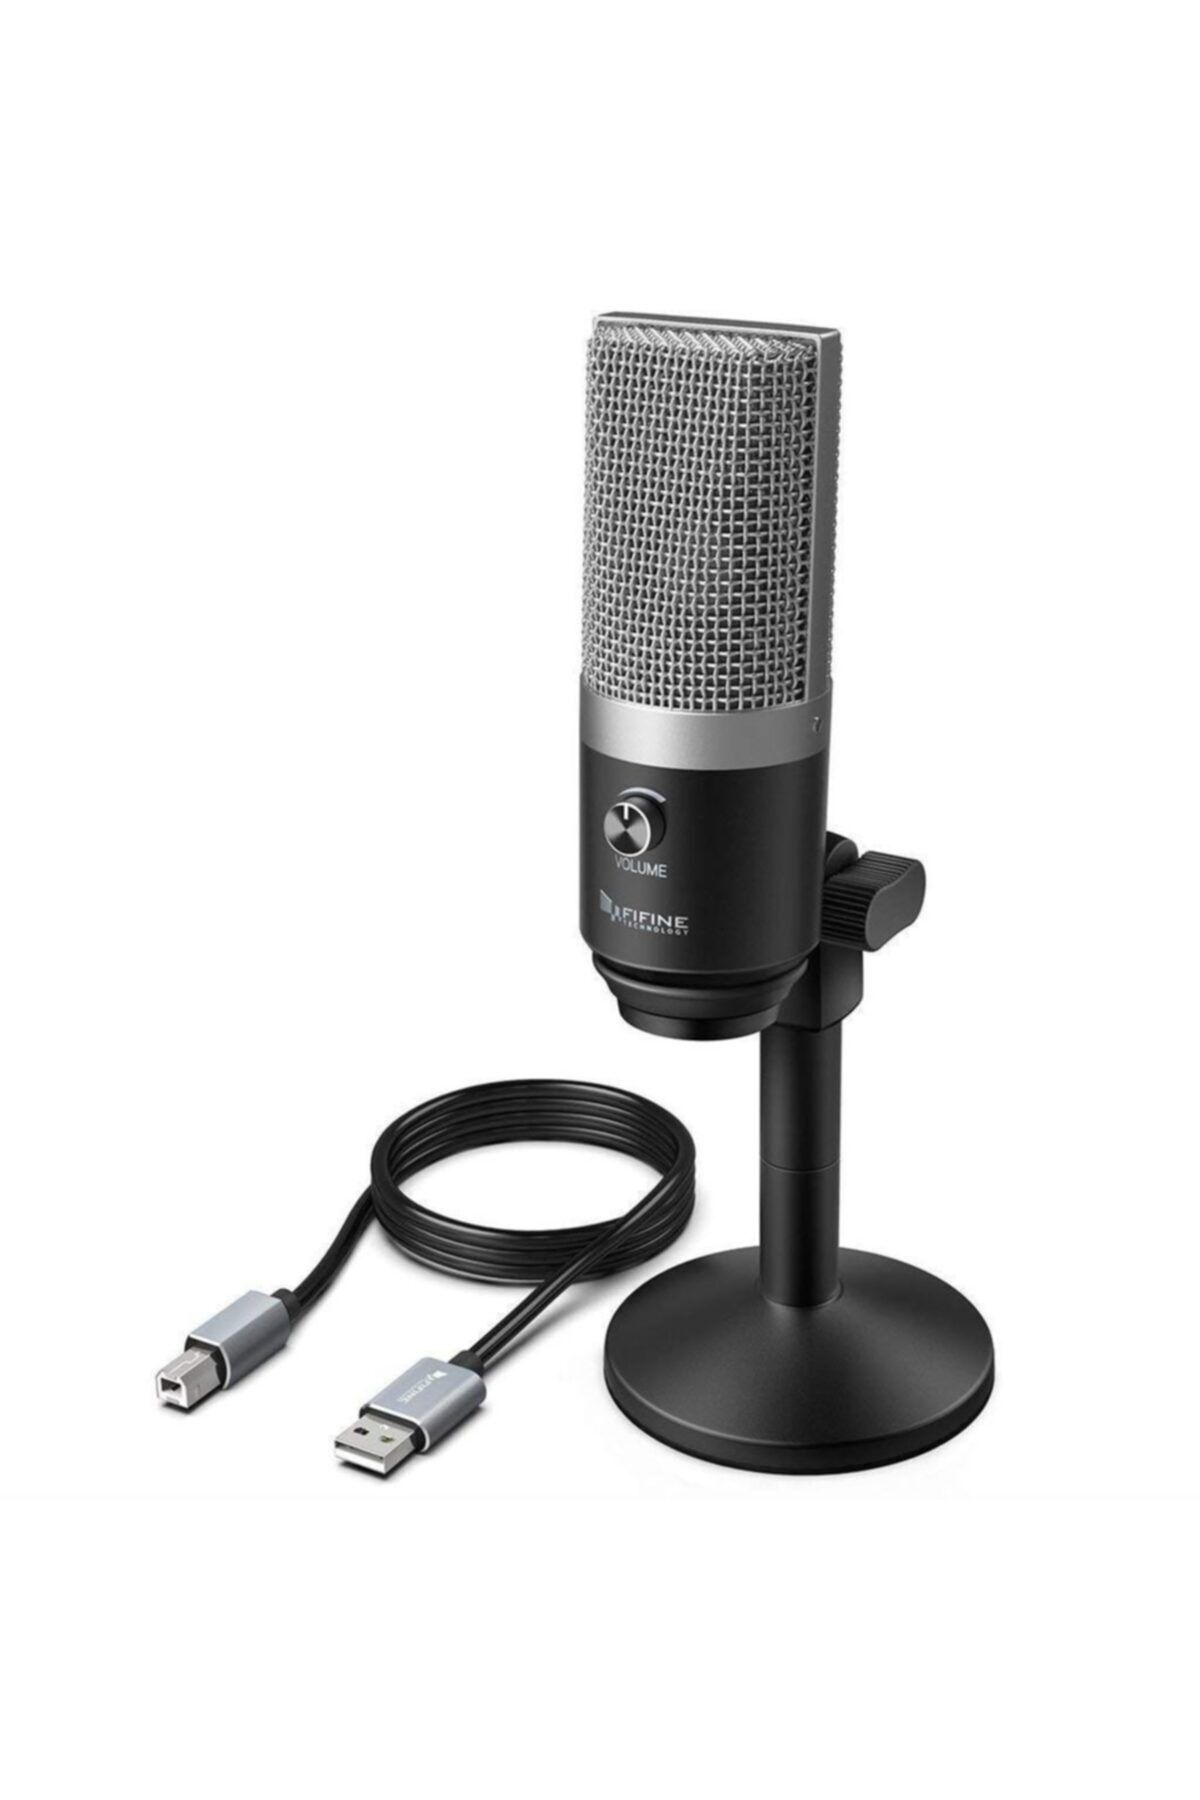 Fifine K670 Usb Mikrofon - Podcast - Yayıncı - Youtuber - Condenser - Bilgisayar Mikrofonu (gri)